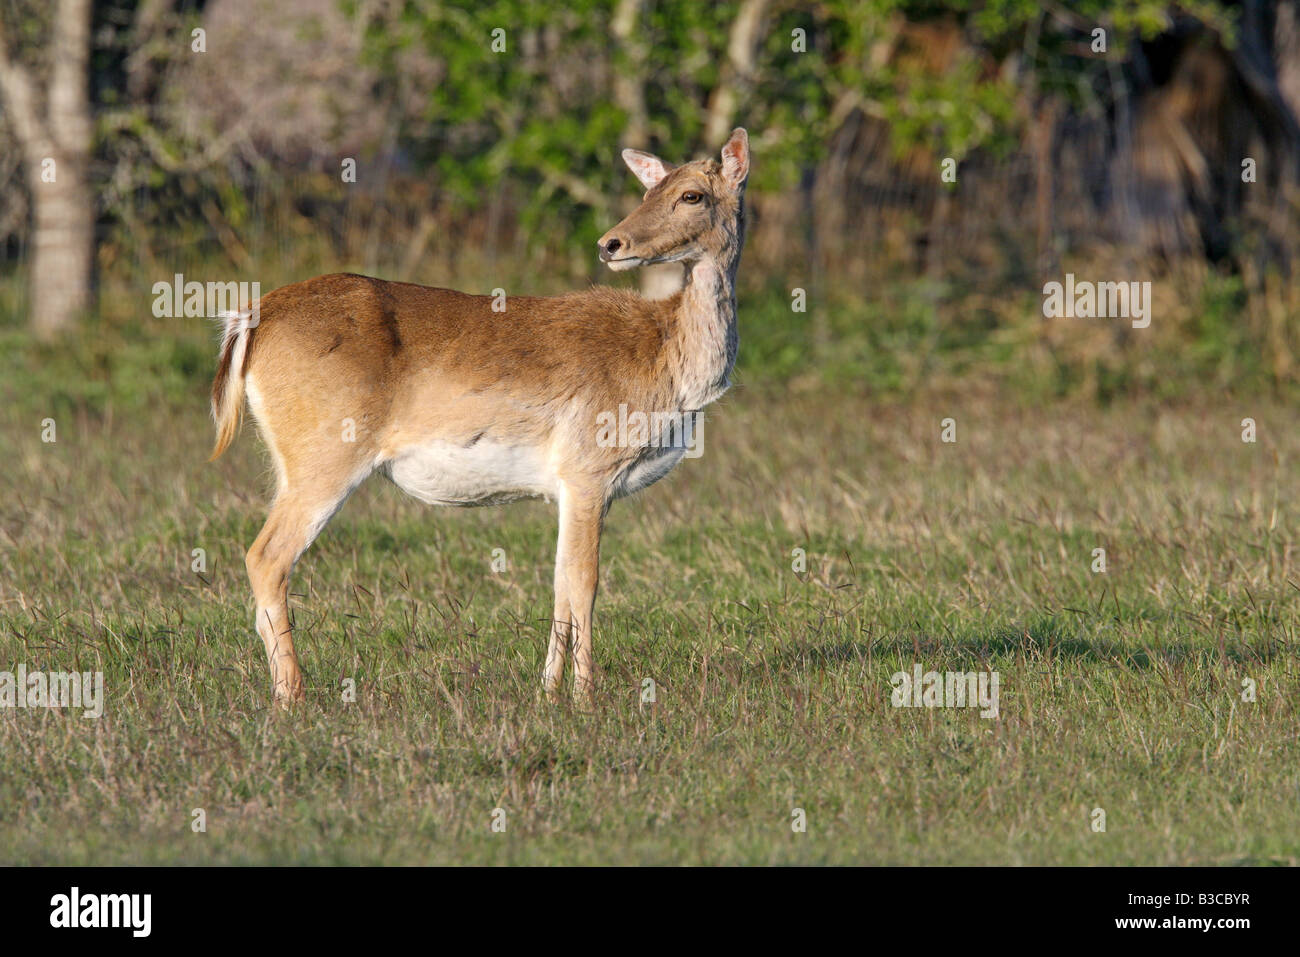 Adult female deer